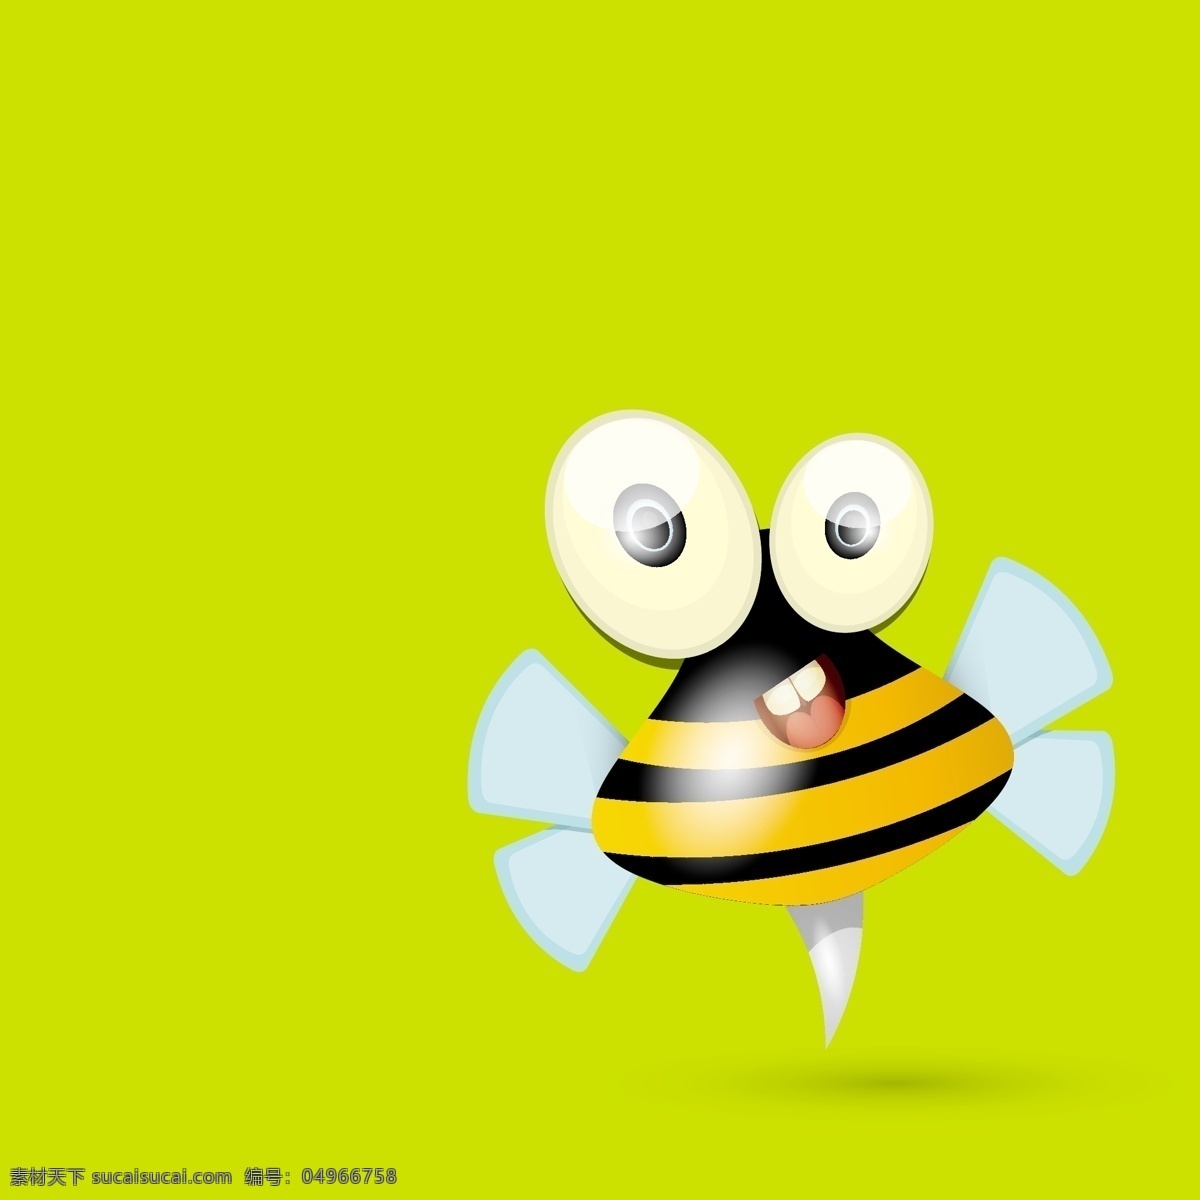 卡通蜜蜂 蜜蜂 可爱蜜蜂 蜂窝 卡通动物 卡通昆虫 动漫动画